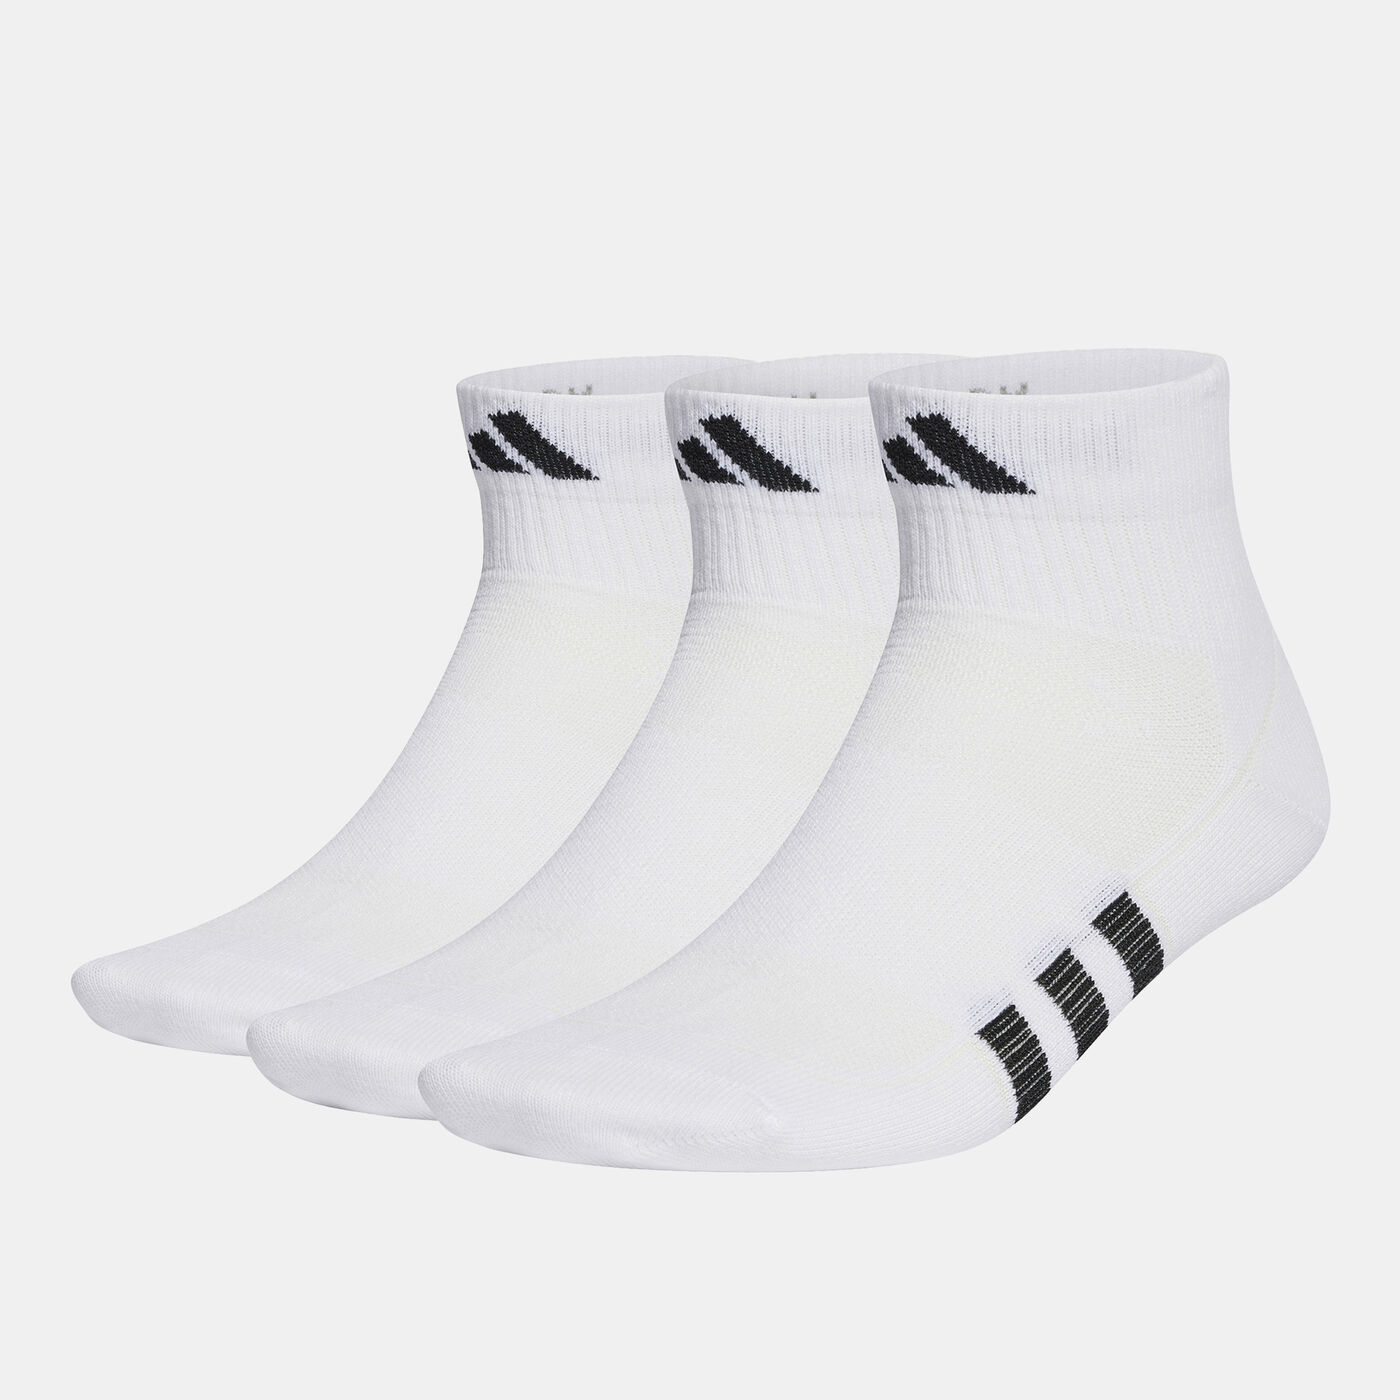 Men's Performance Light Quarter Socks (3 Pairs)